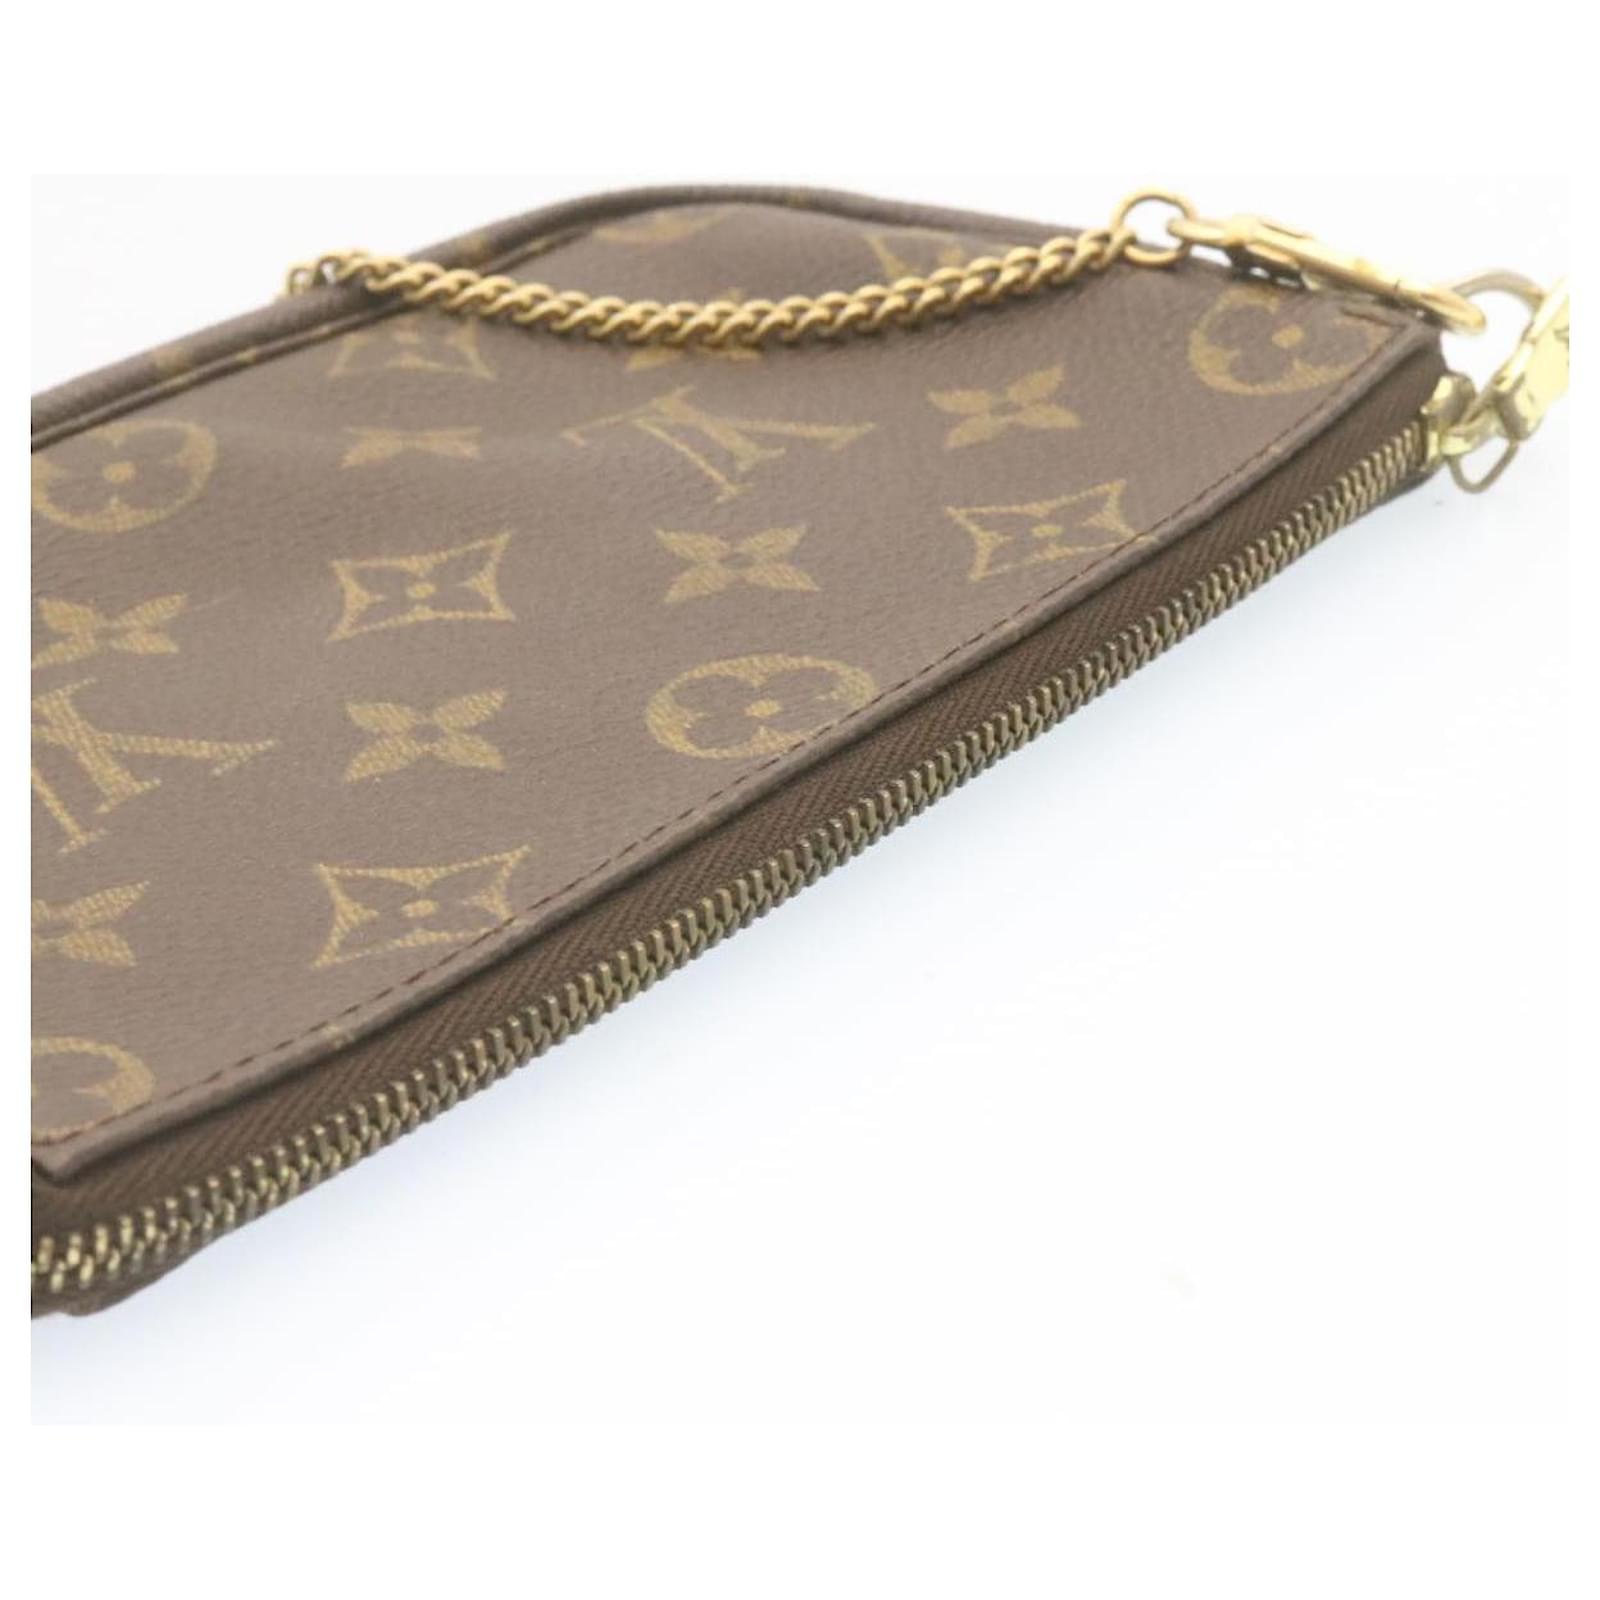 Pochette accessoire mini bag Louis Vuitton Brown in Cotton - 30578761